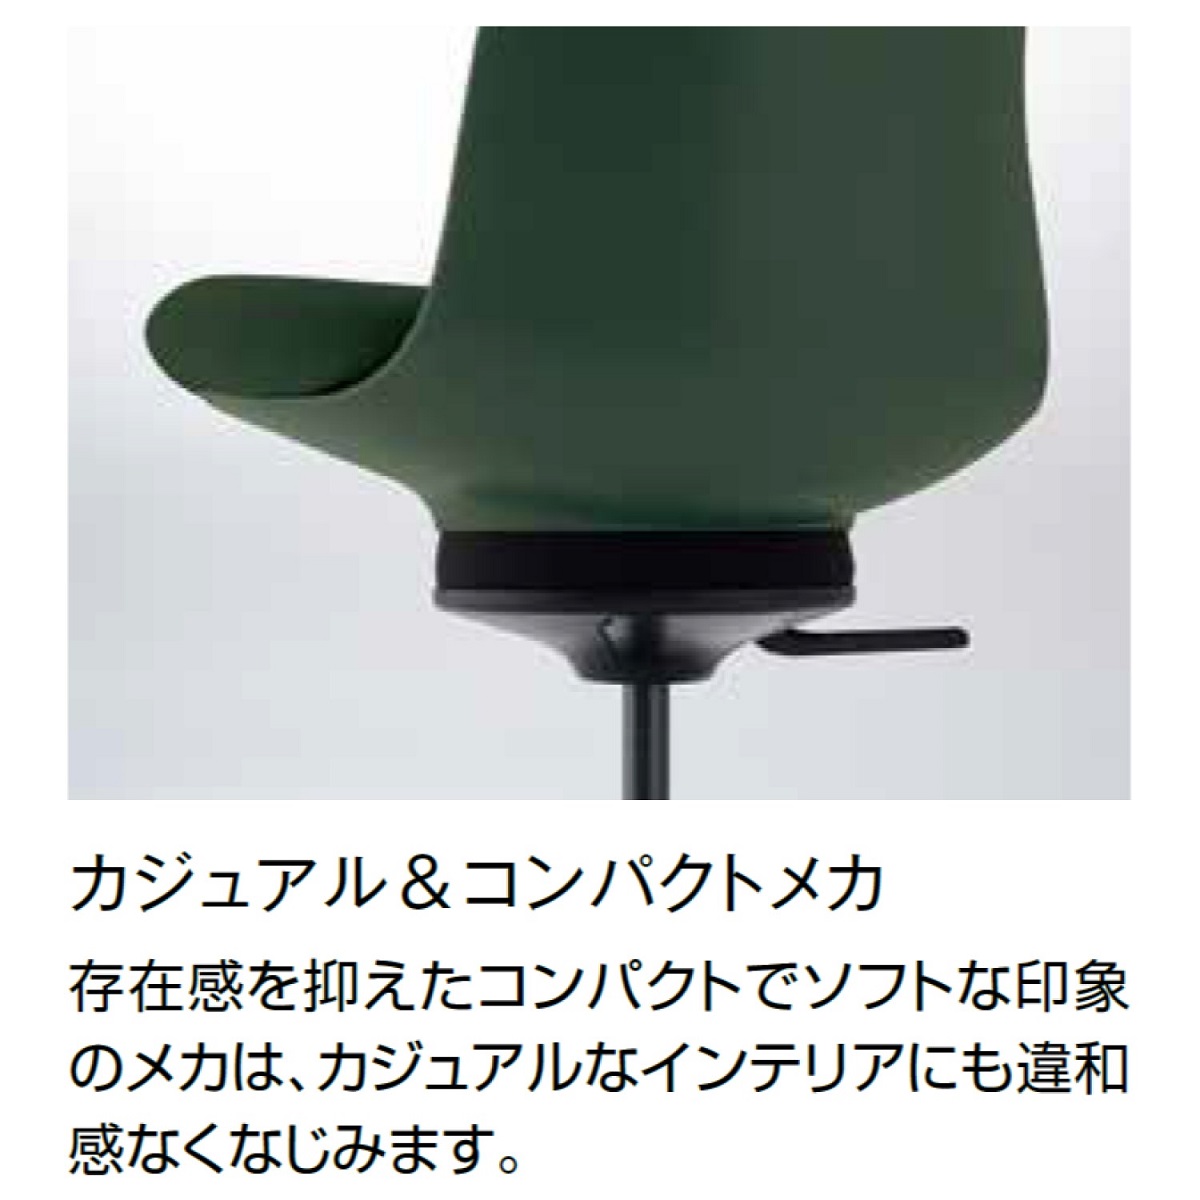 コクヨ デスクチェア オフィスチェア 椅子 ingLIFE イングライフ C05-B10CG 背合板タイプ 5本脚(キャスター) 肘なし ブラック脚  布 | コクヨオンラインストア楽天市場店